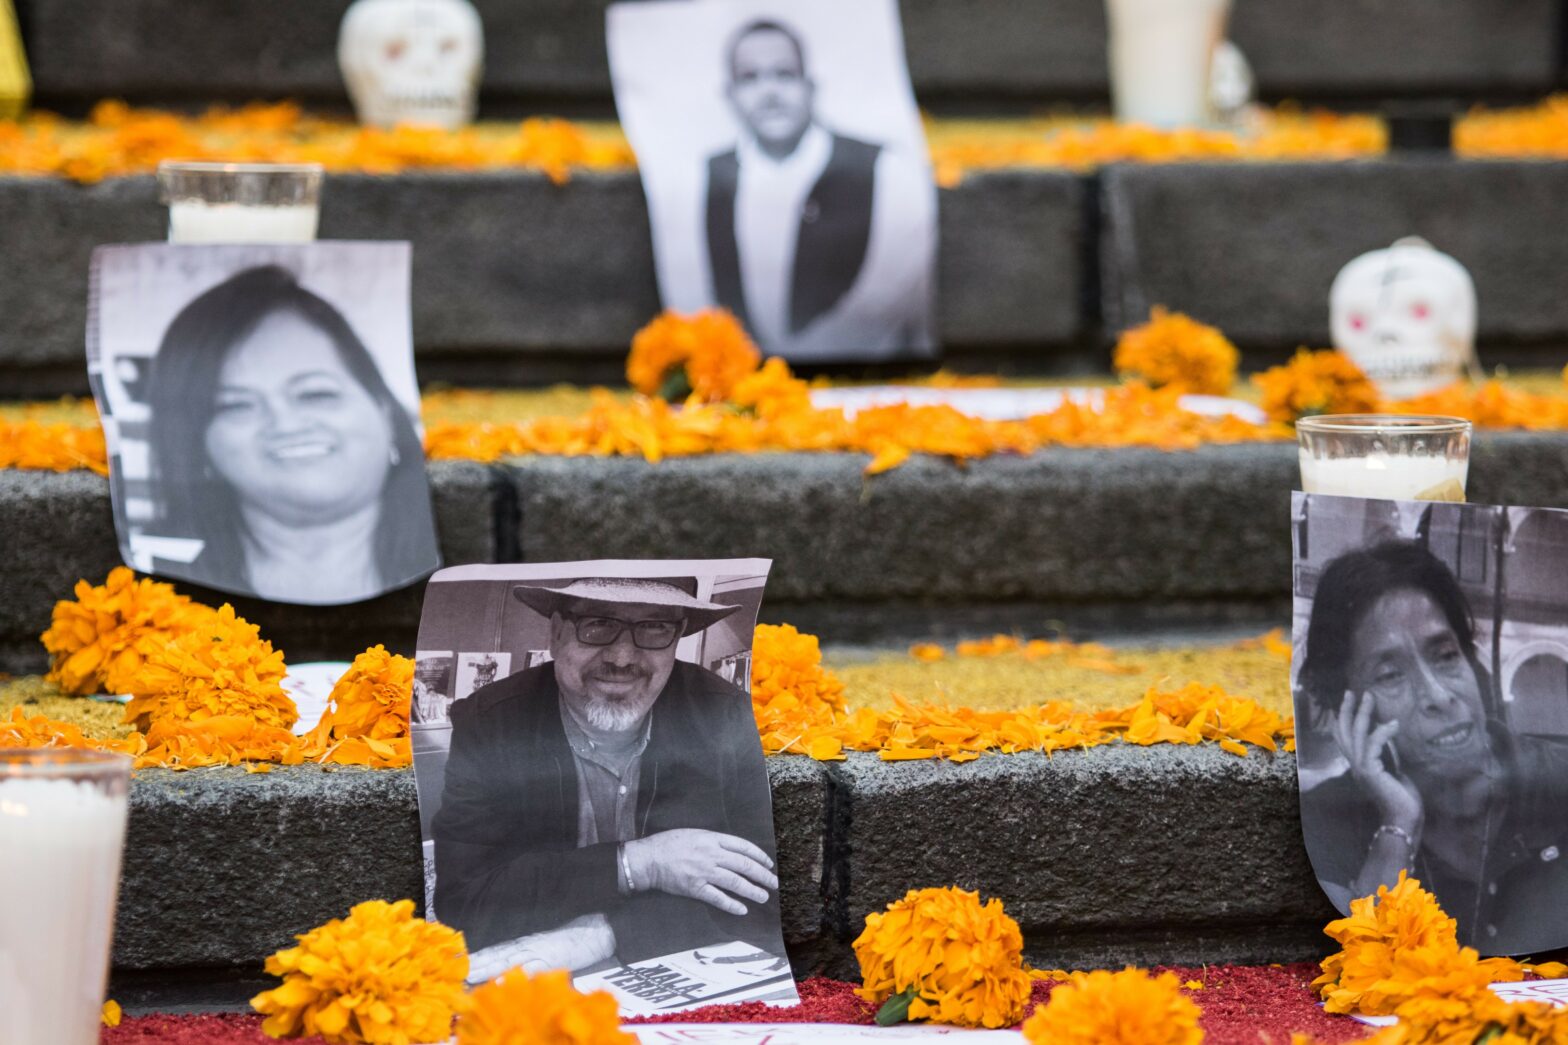 Fotos de periodistas asesinados en México